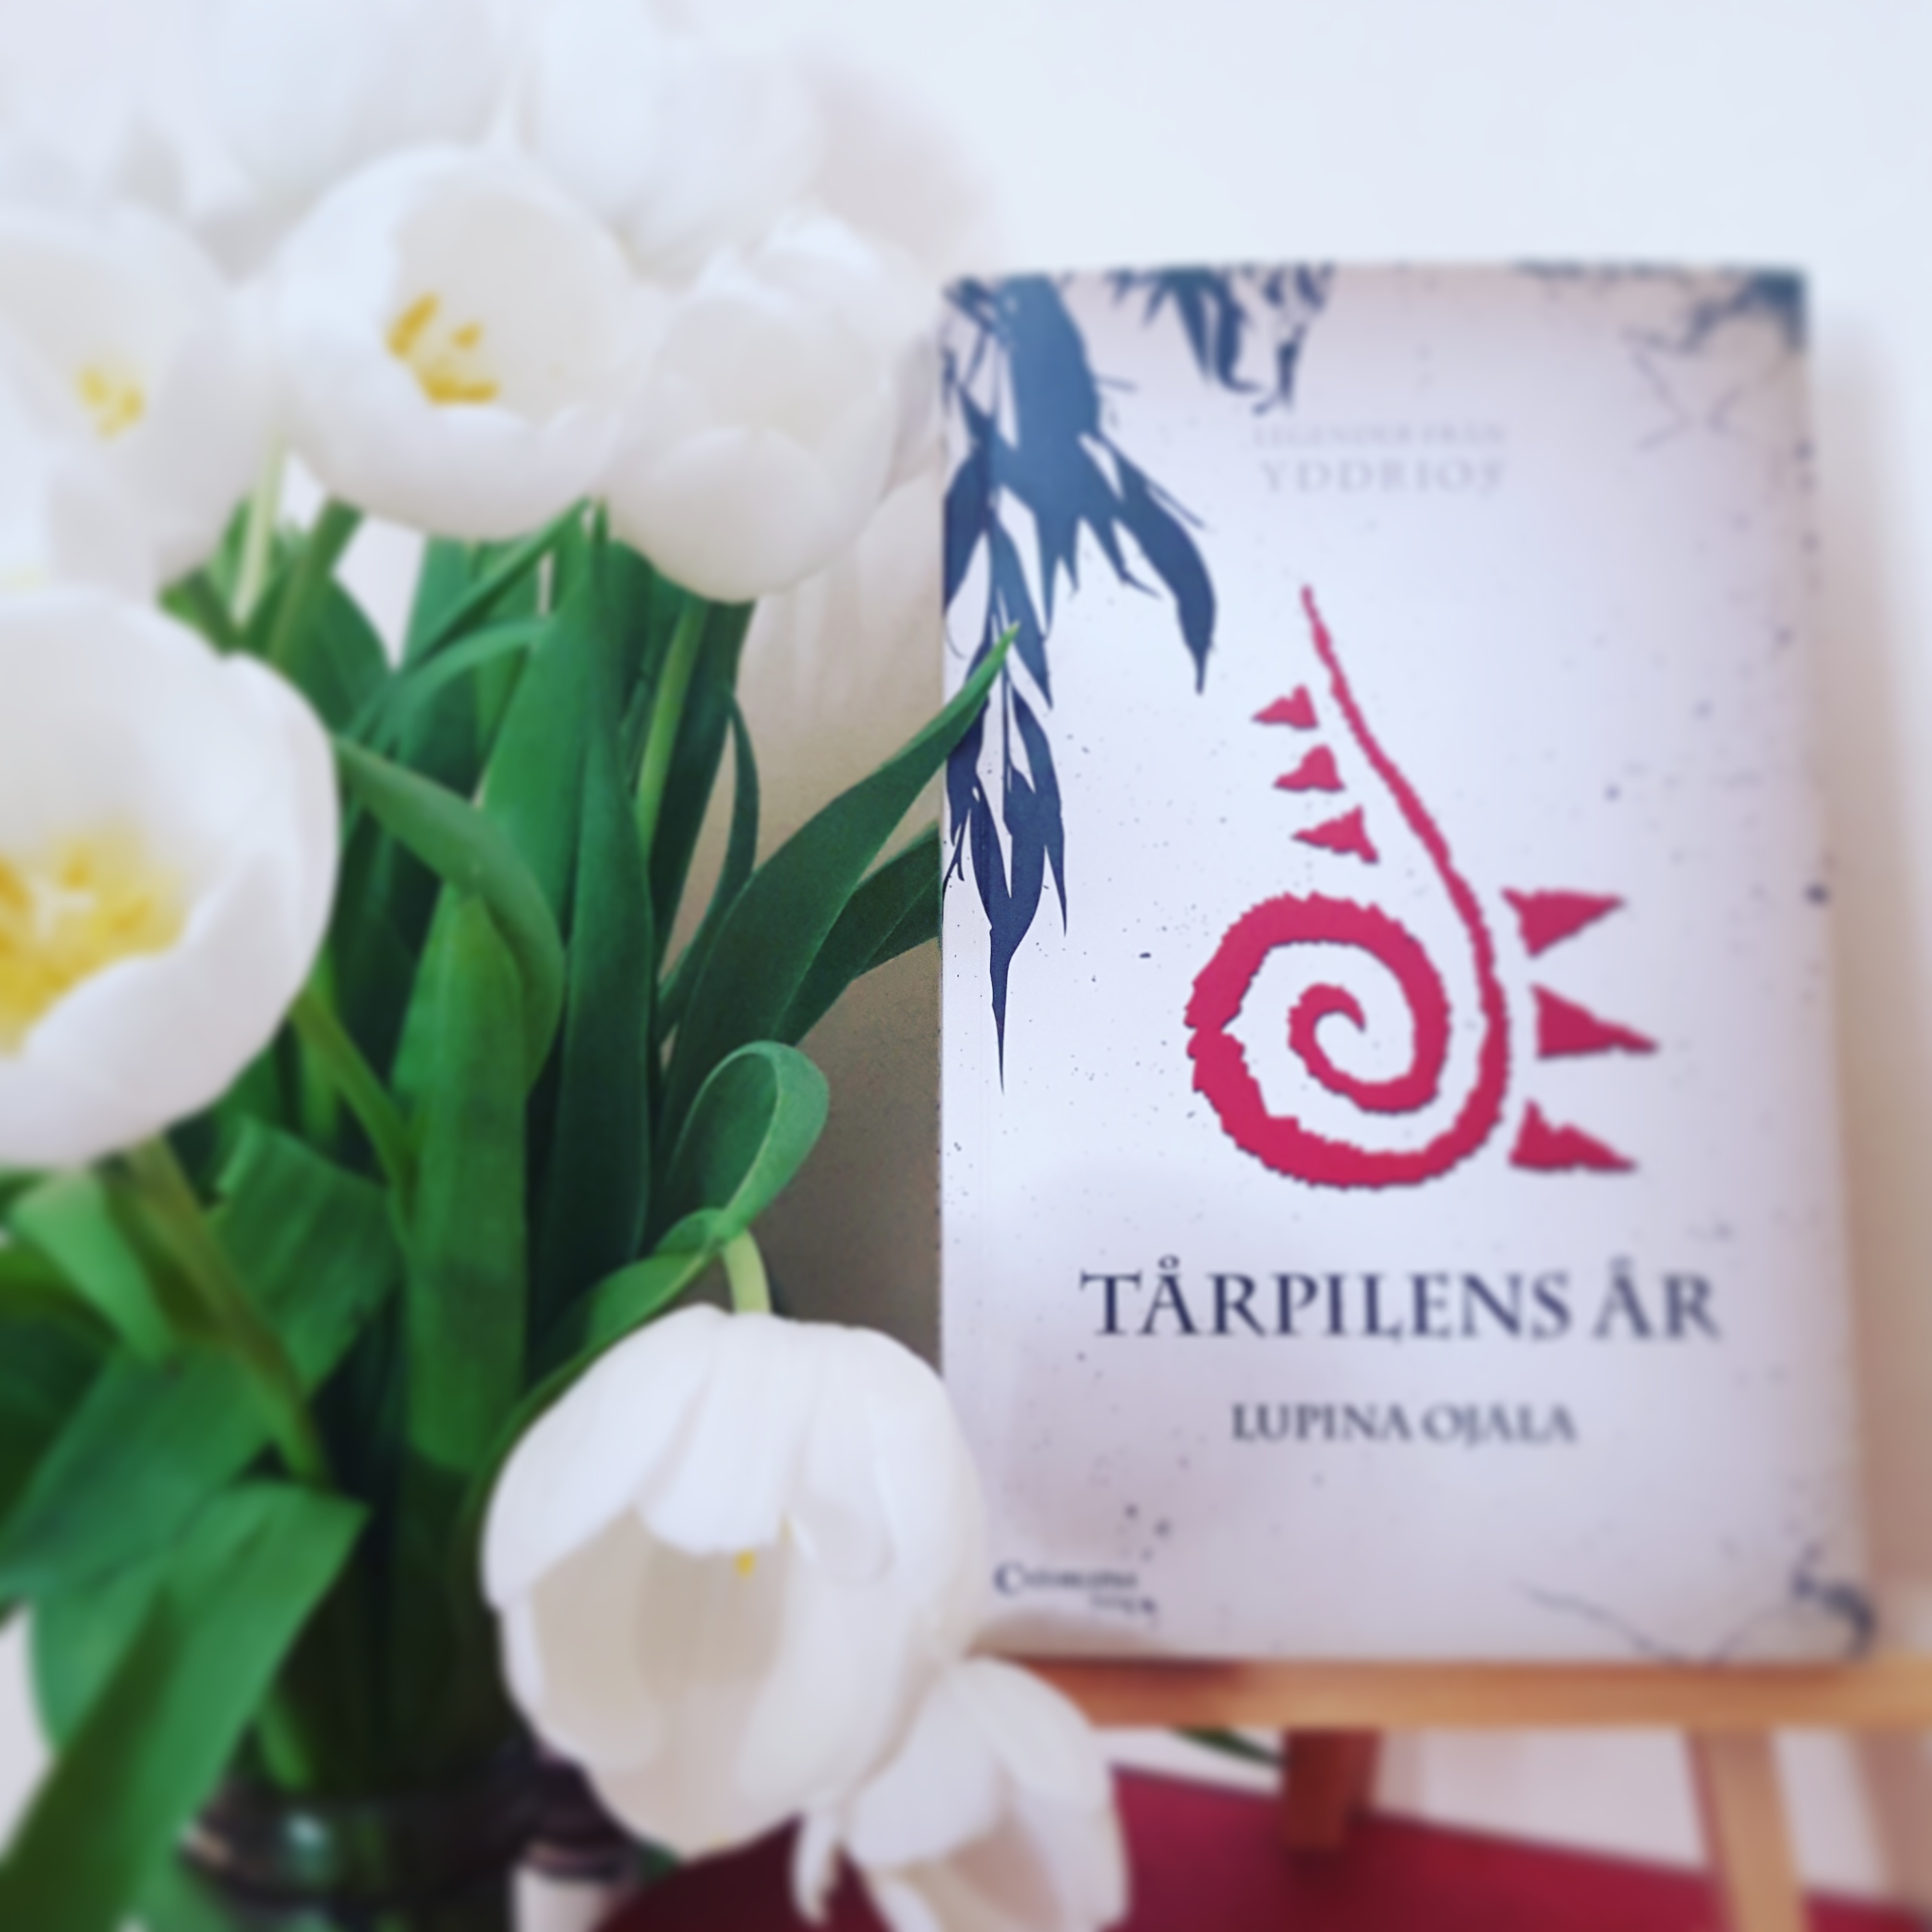 Boken Tårpilens år av Lupina Ojala och en bukett vita tulpaner.